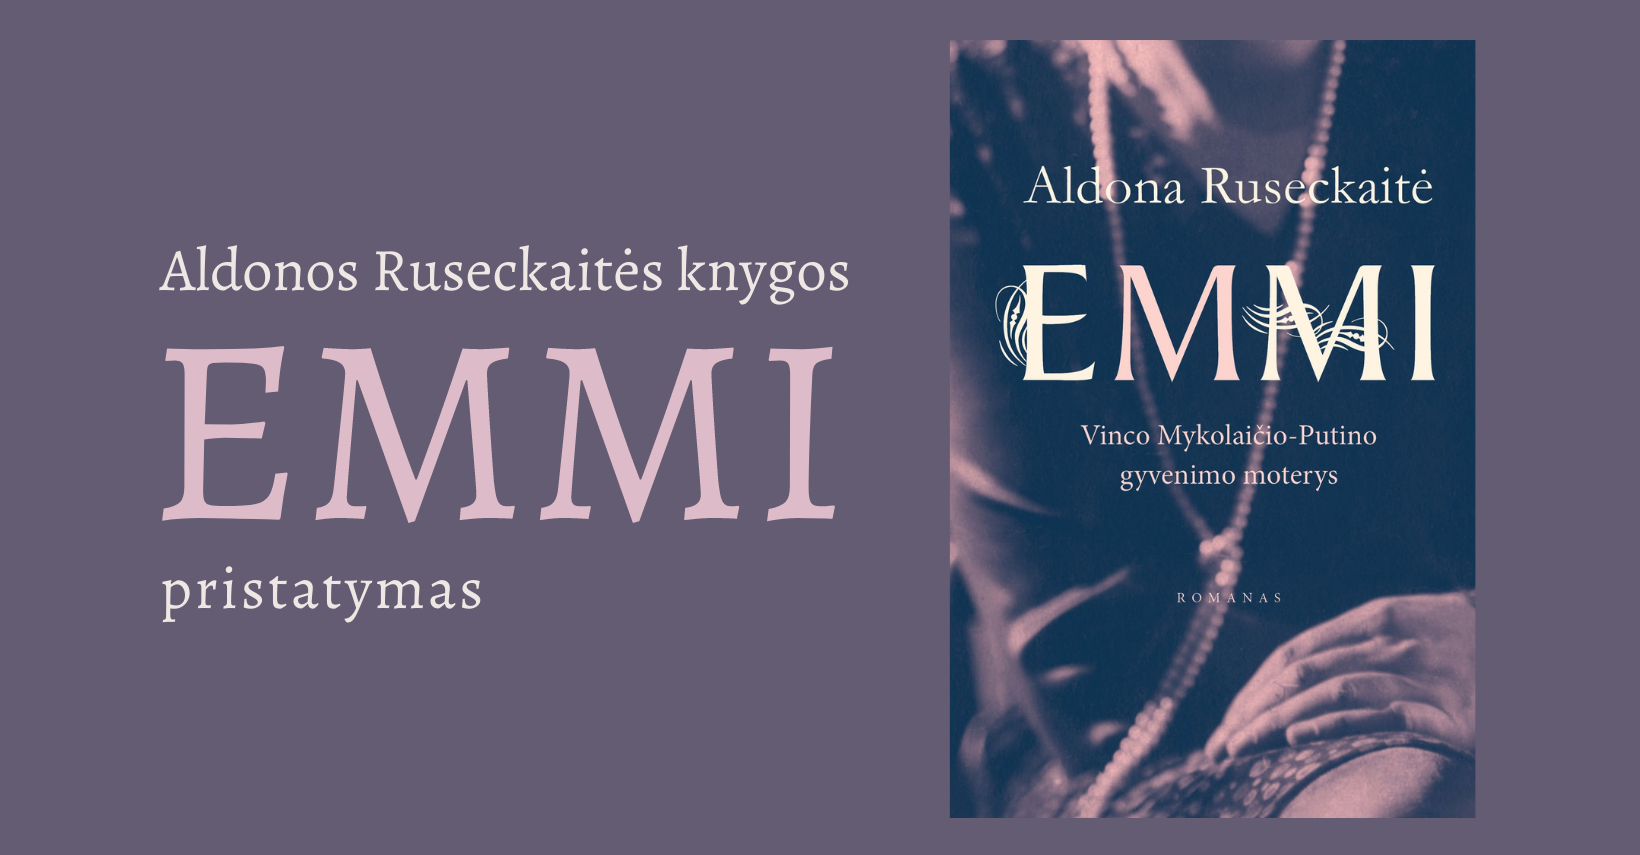 Aldonos Ruseckaitės knygos „EMMI“ pristatymas